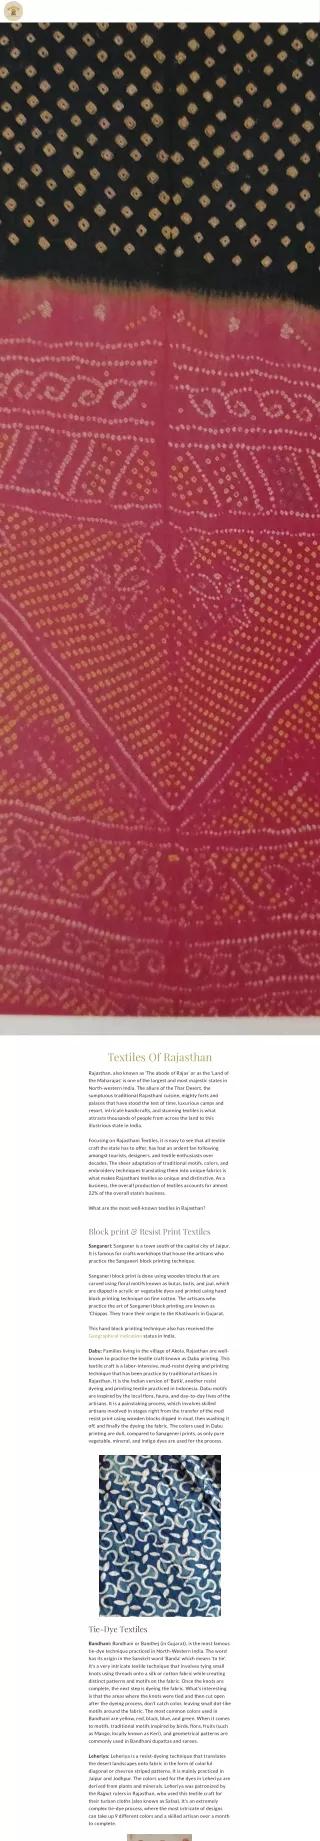 manvar_com_blog_textiles_of_rajasthan_manvar_html(1)